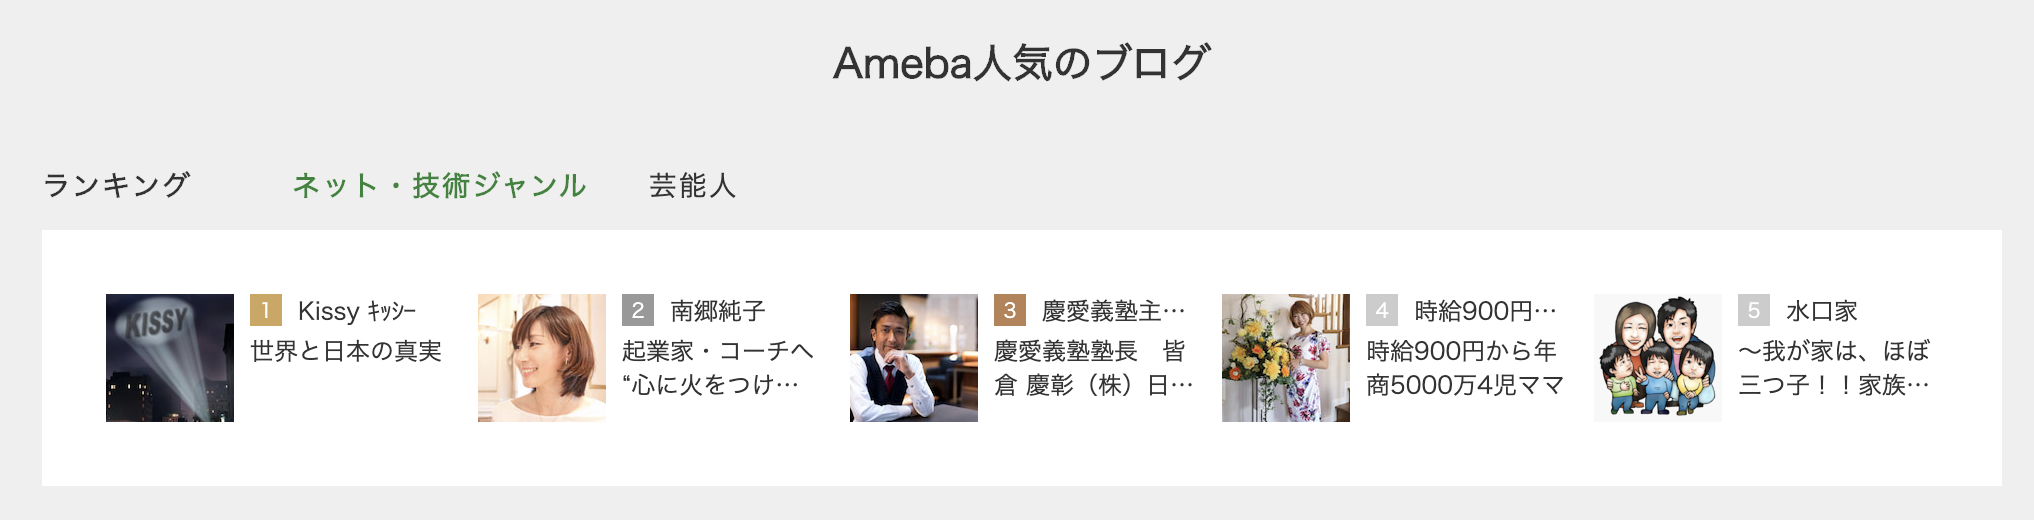 Ameba人気のブログのスクリーンショット